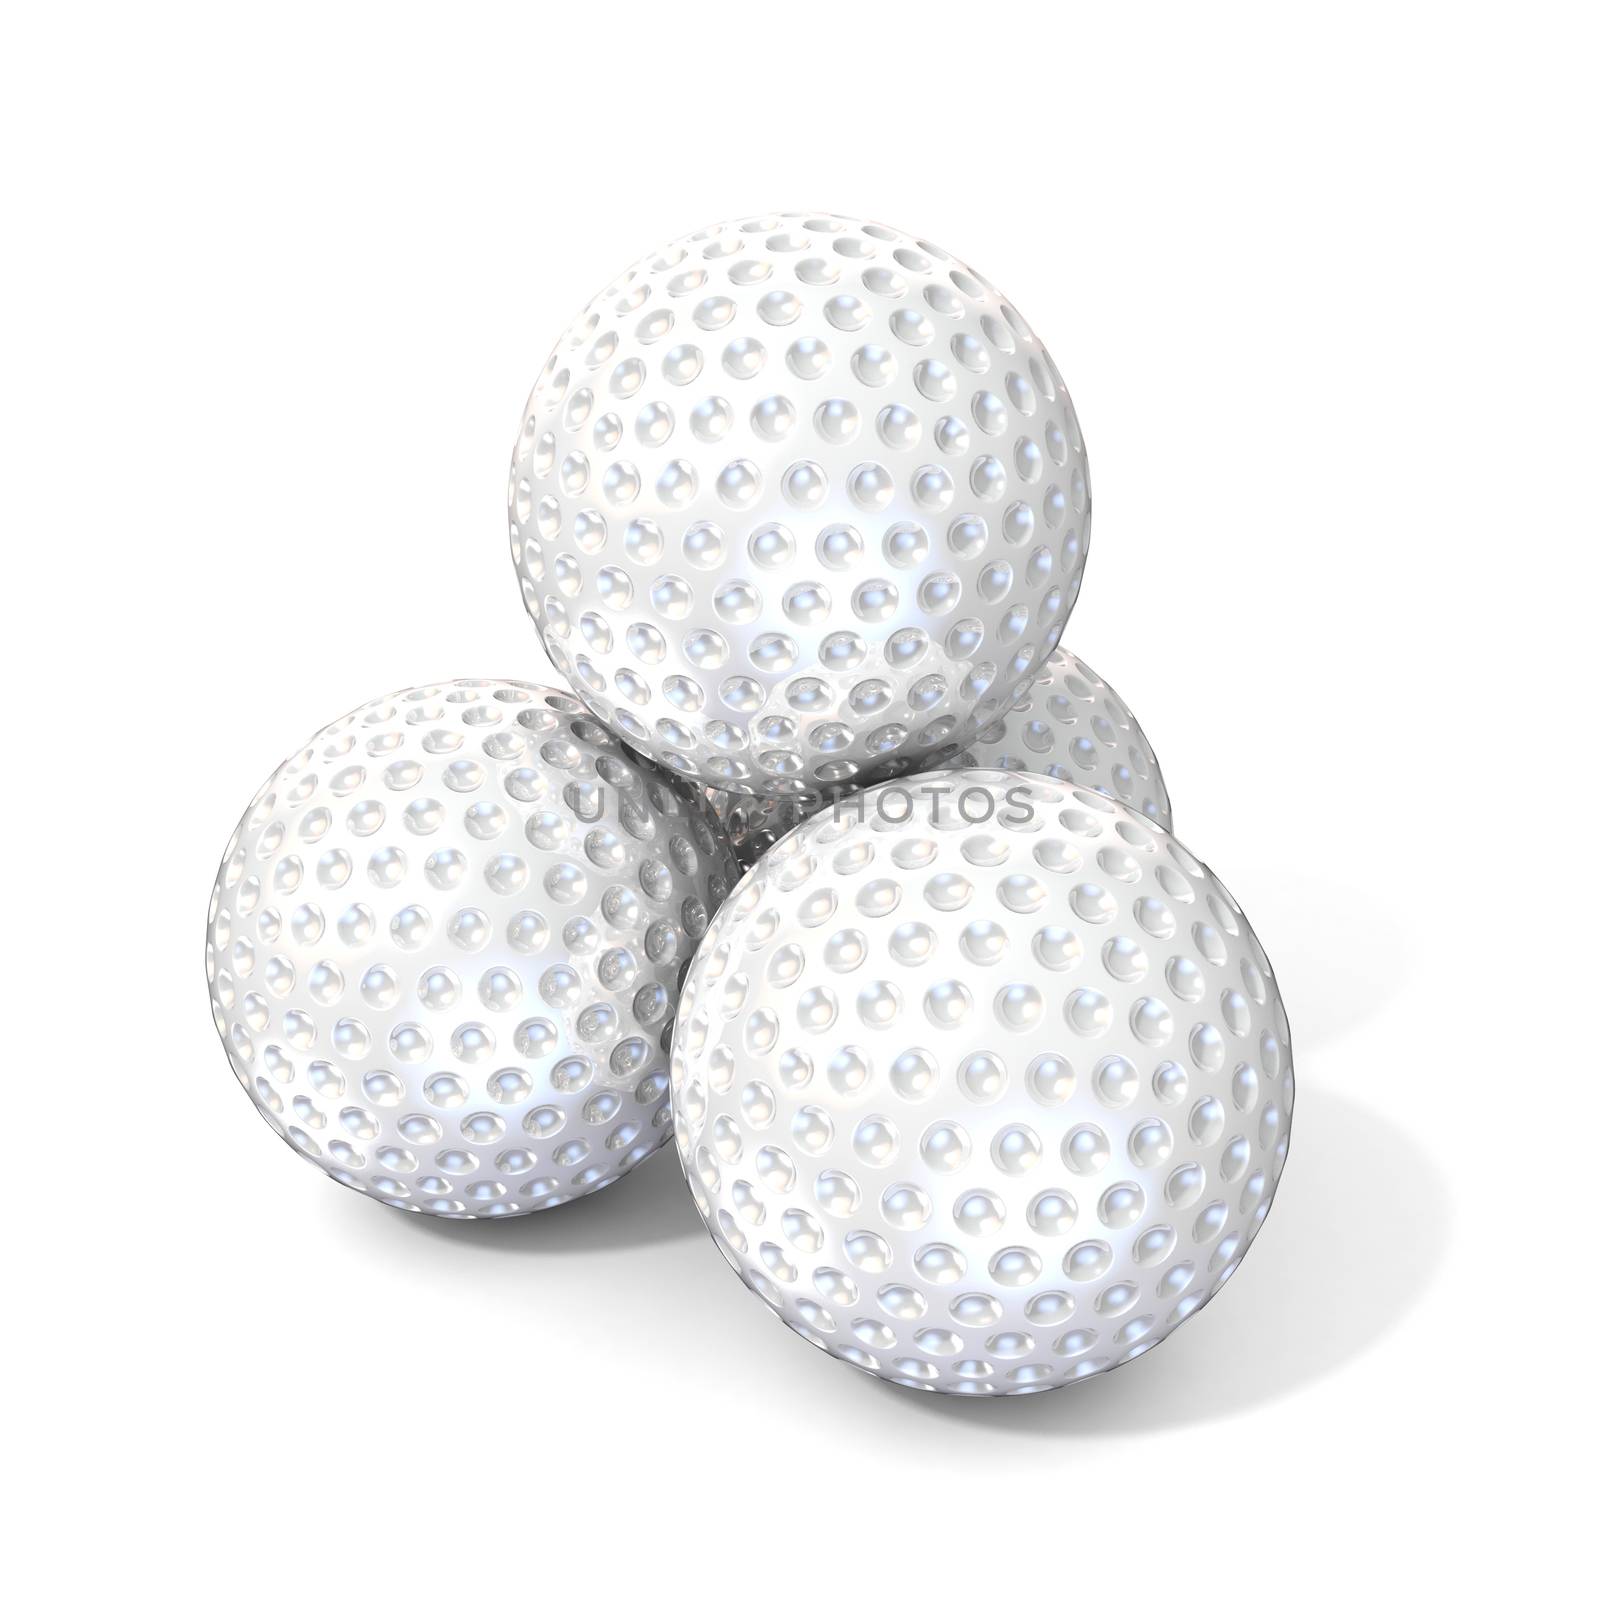 Golf balls. 3D render illustration, isolated on white background